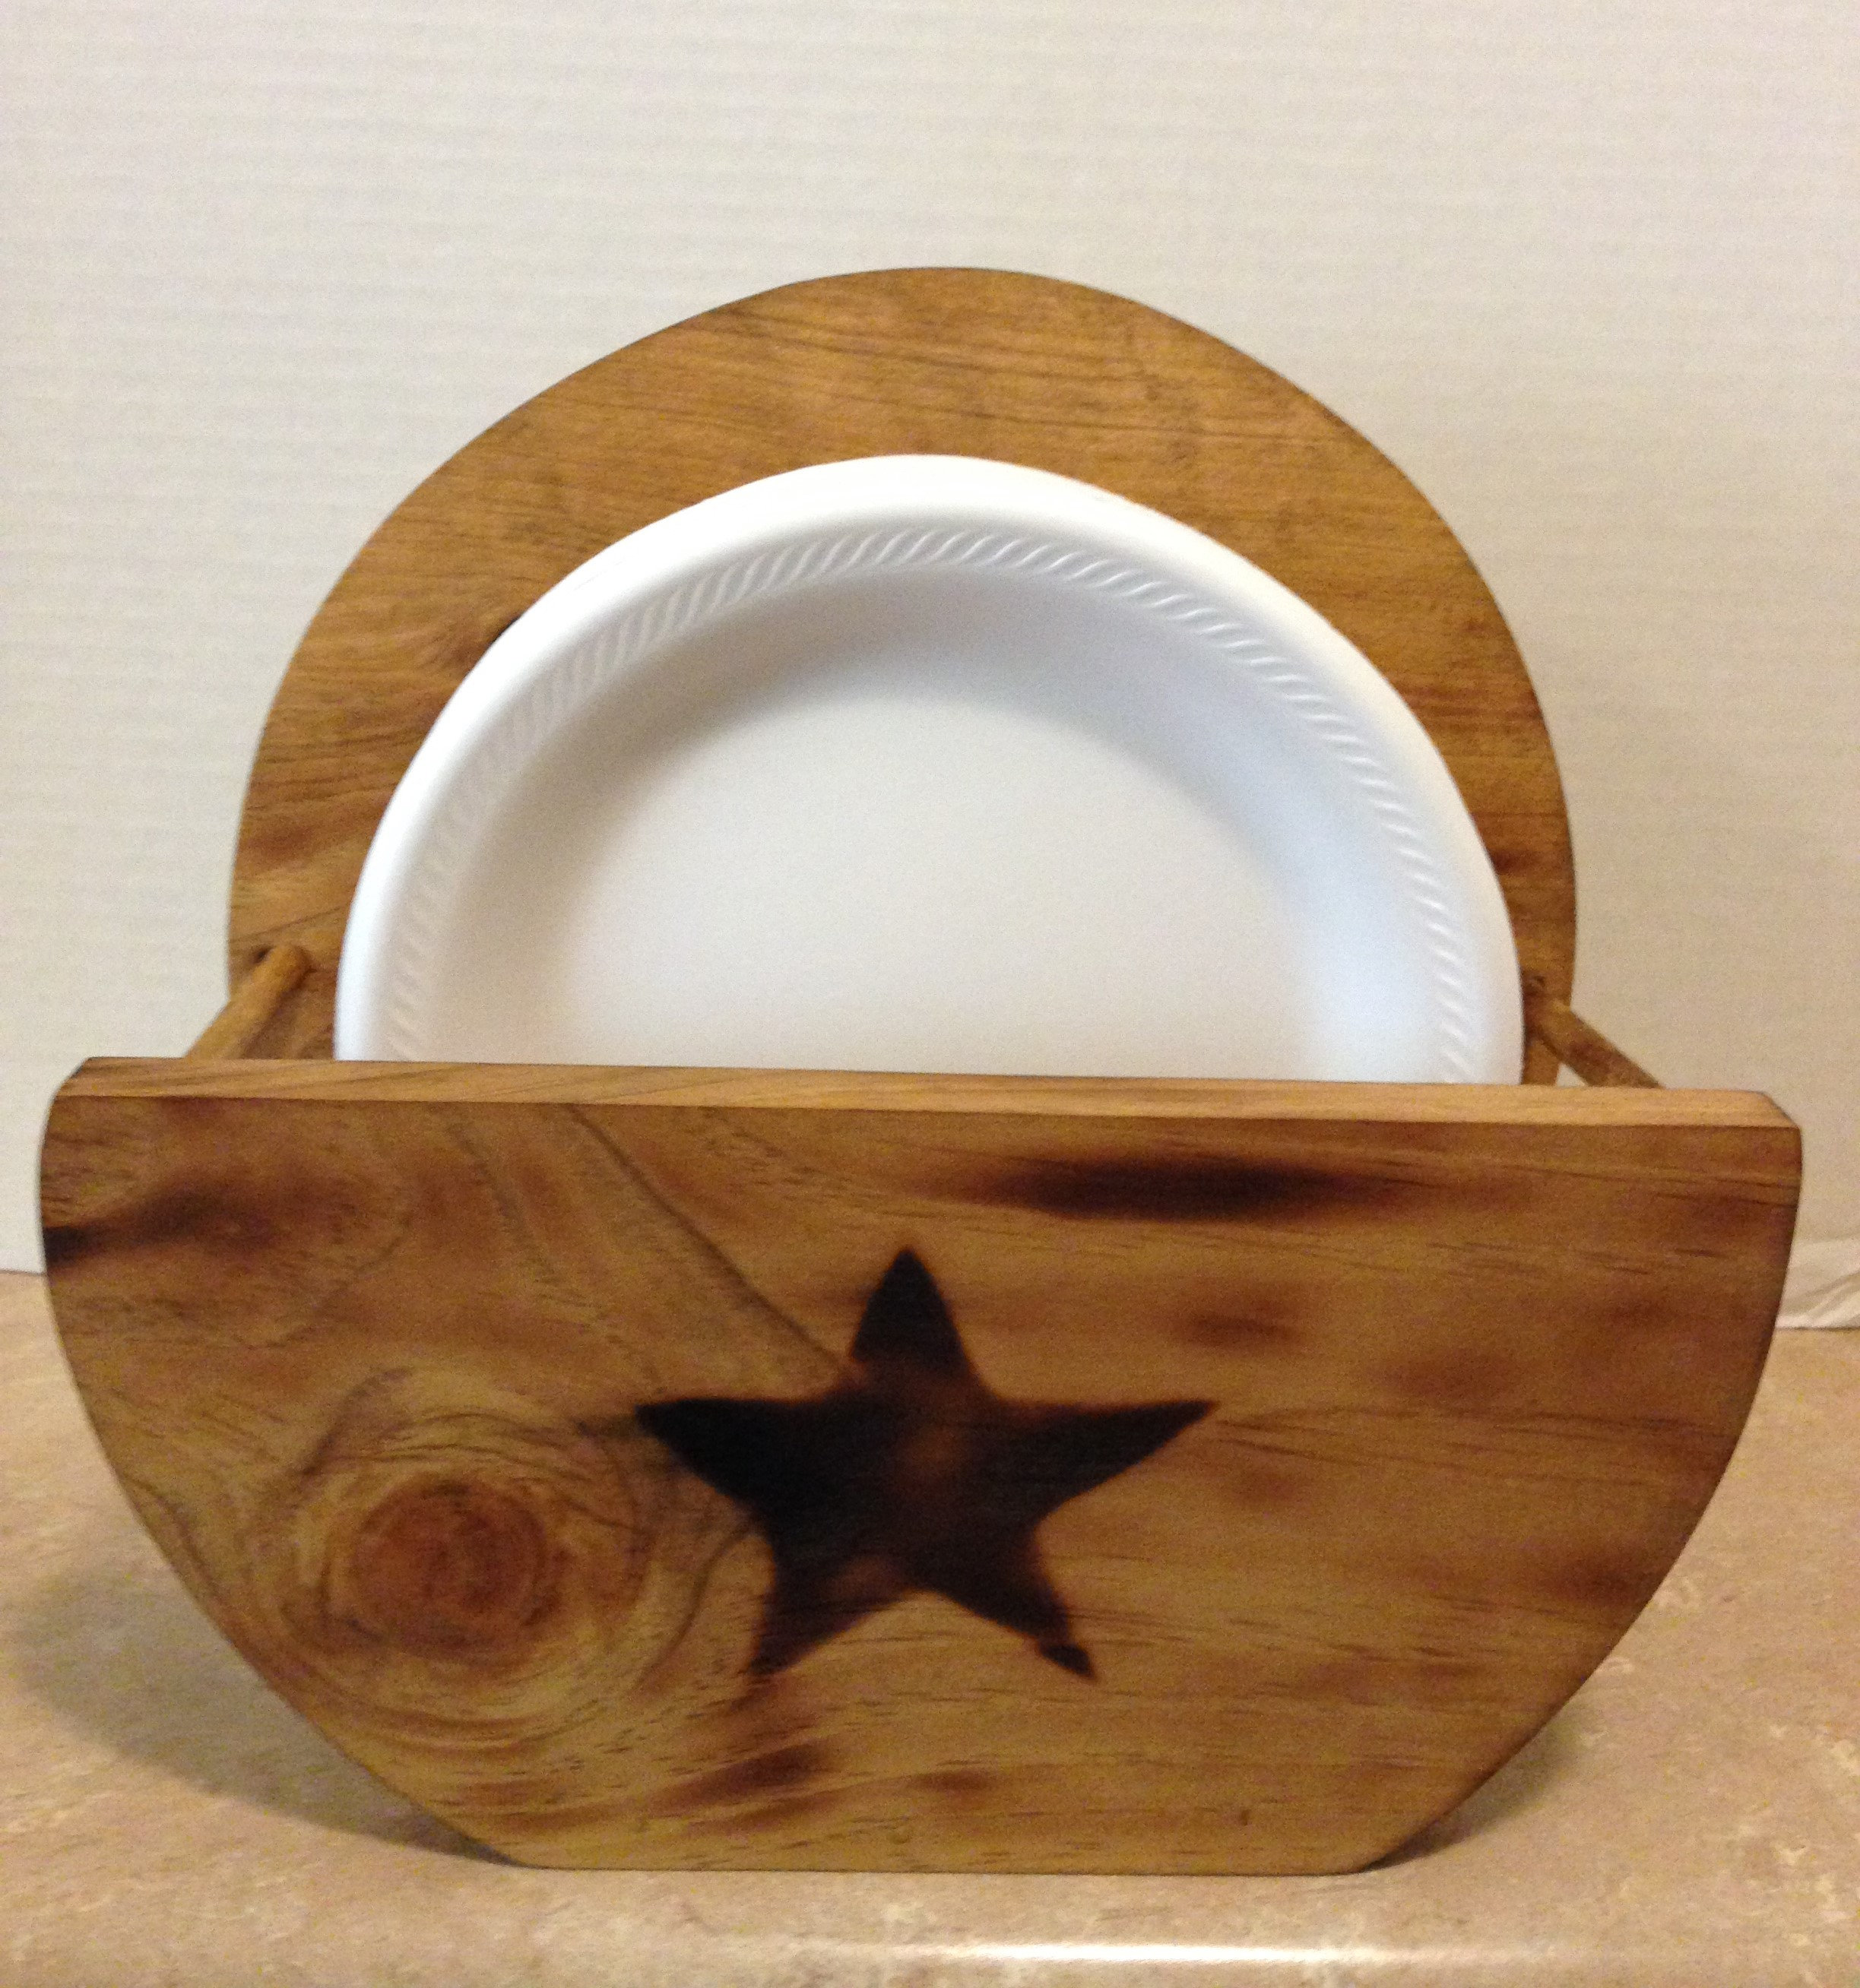 Paper Plate Holder Wooden Plate Holder Holder For Plates Primitive